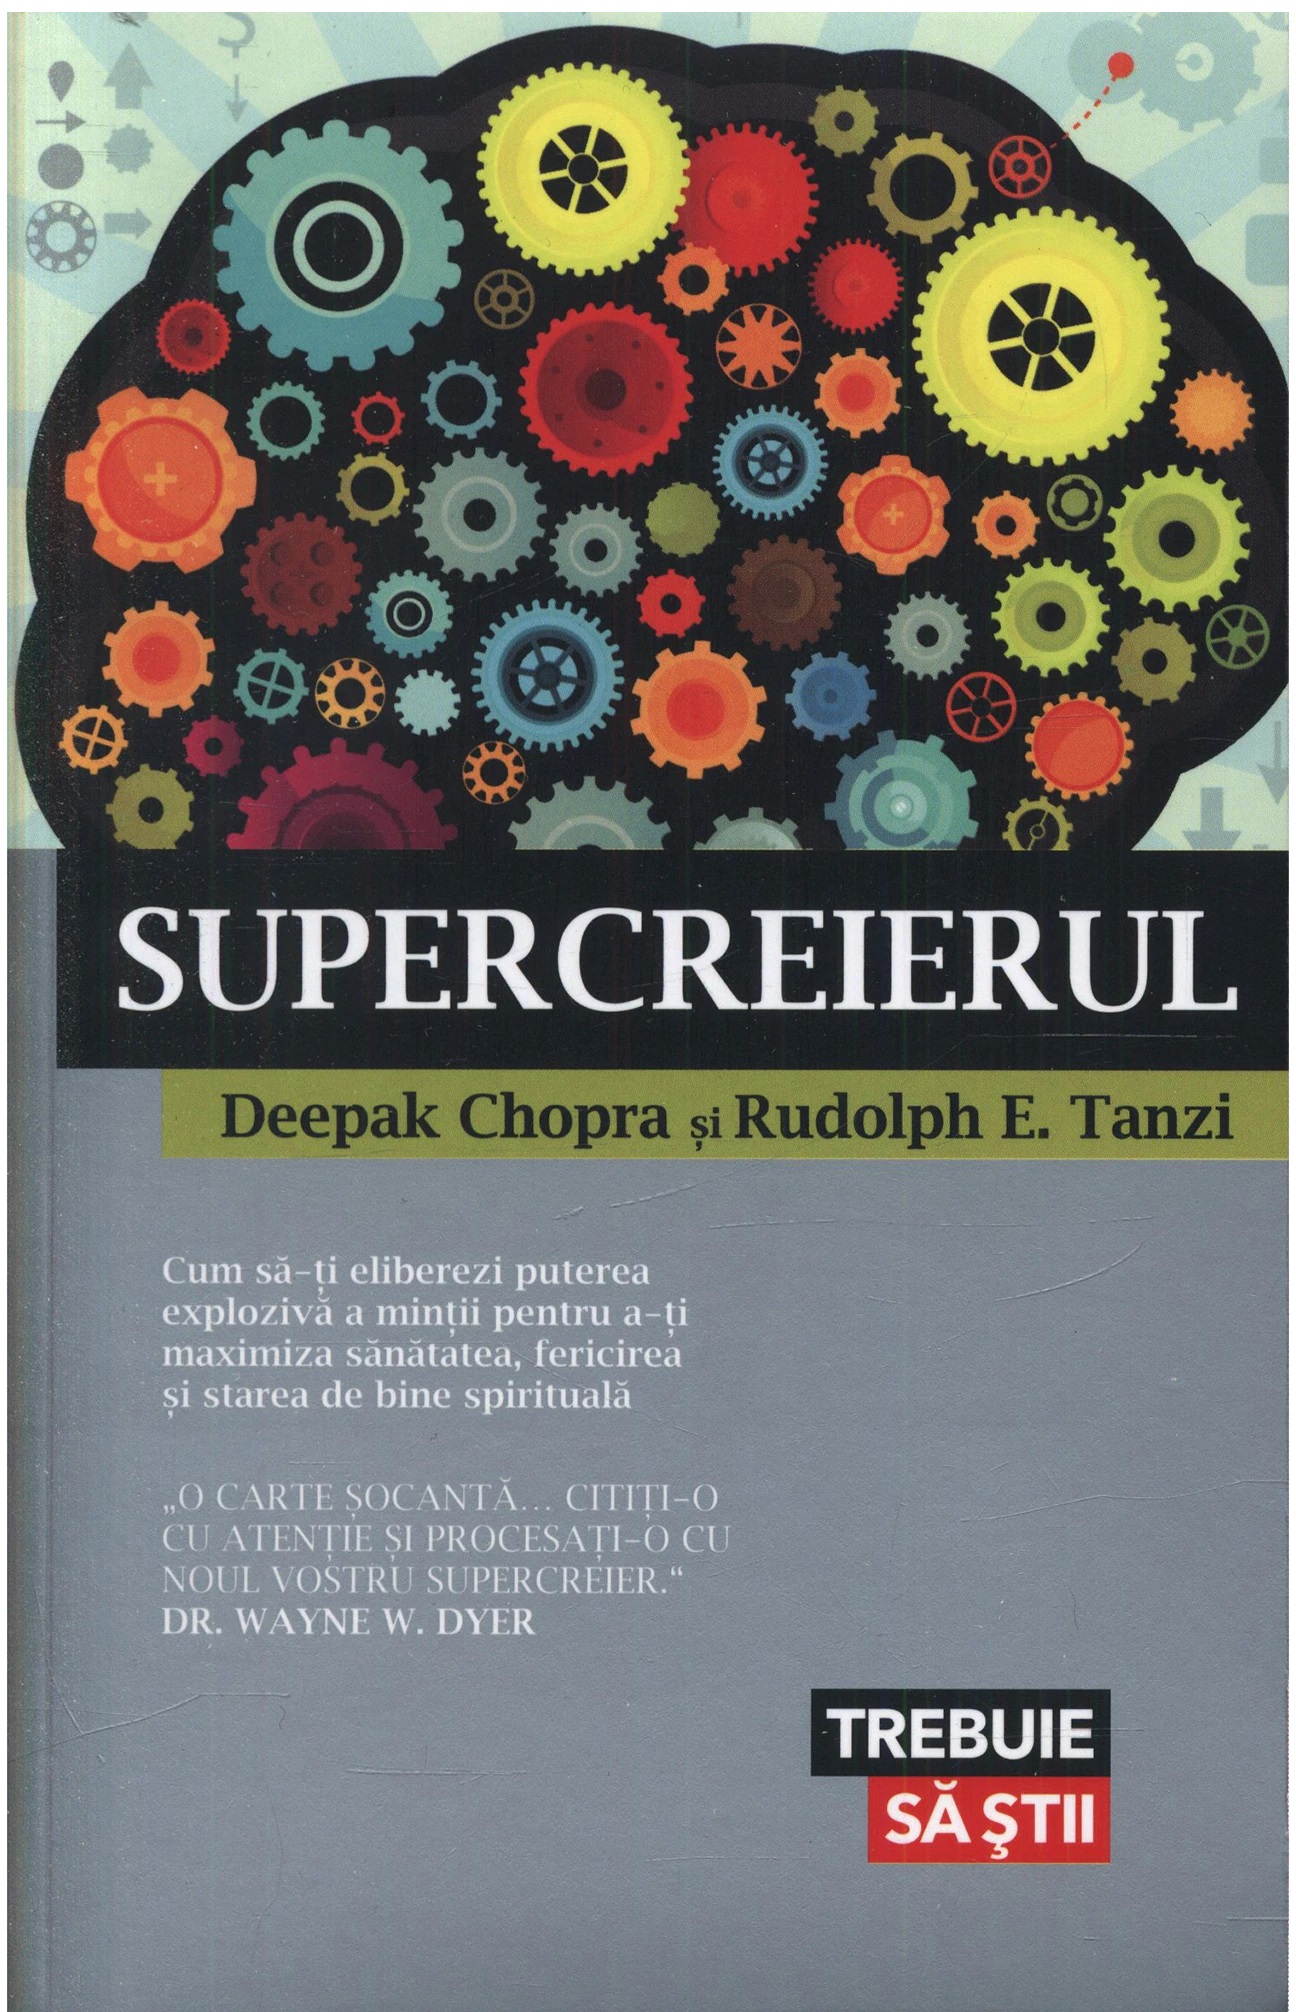 Supercreierul | Deepak Chopra, Rudolph E. Tanzi carturesti 2022